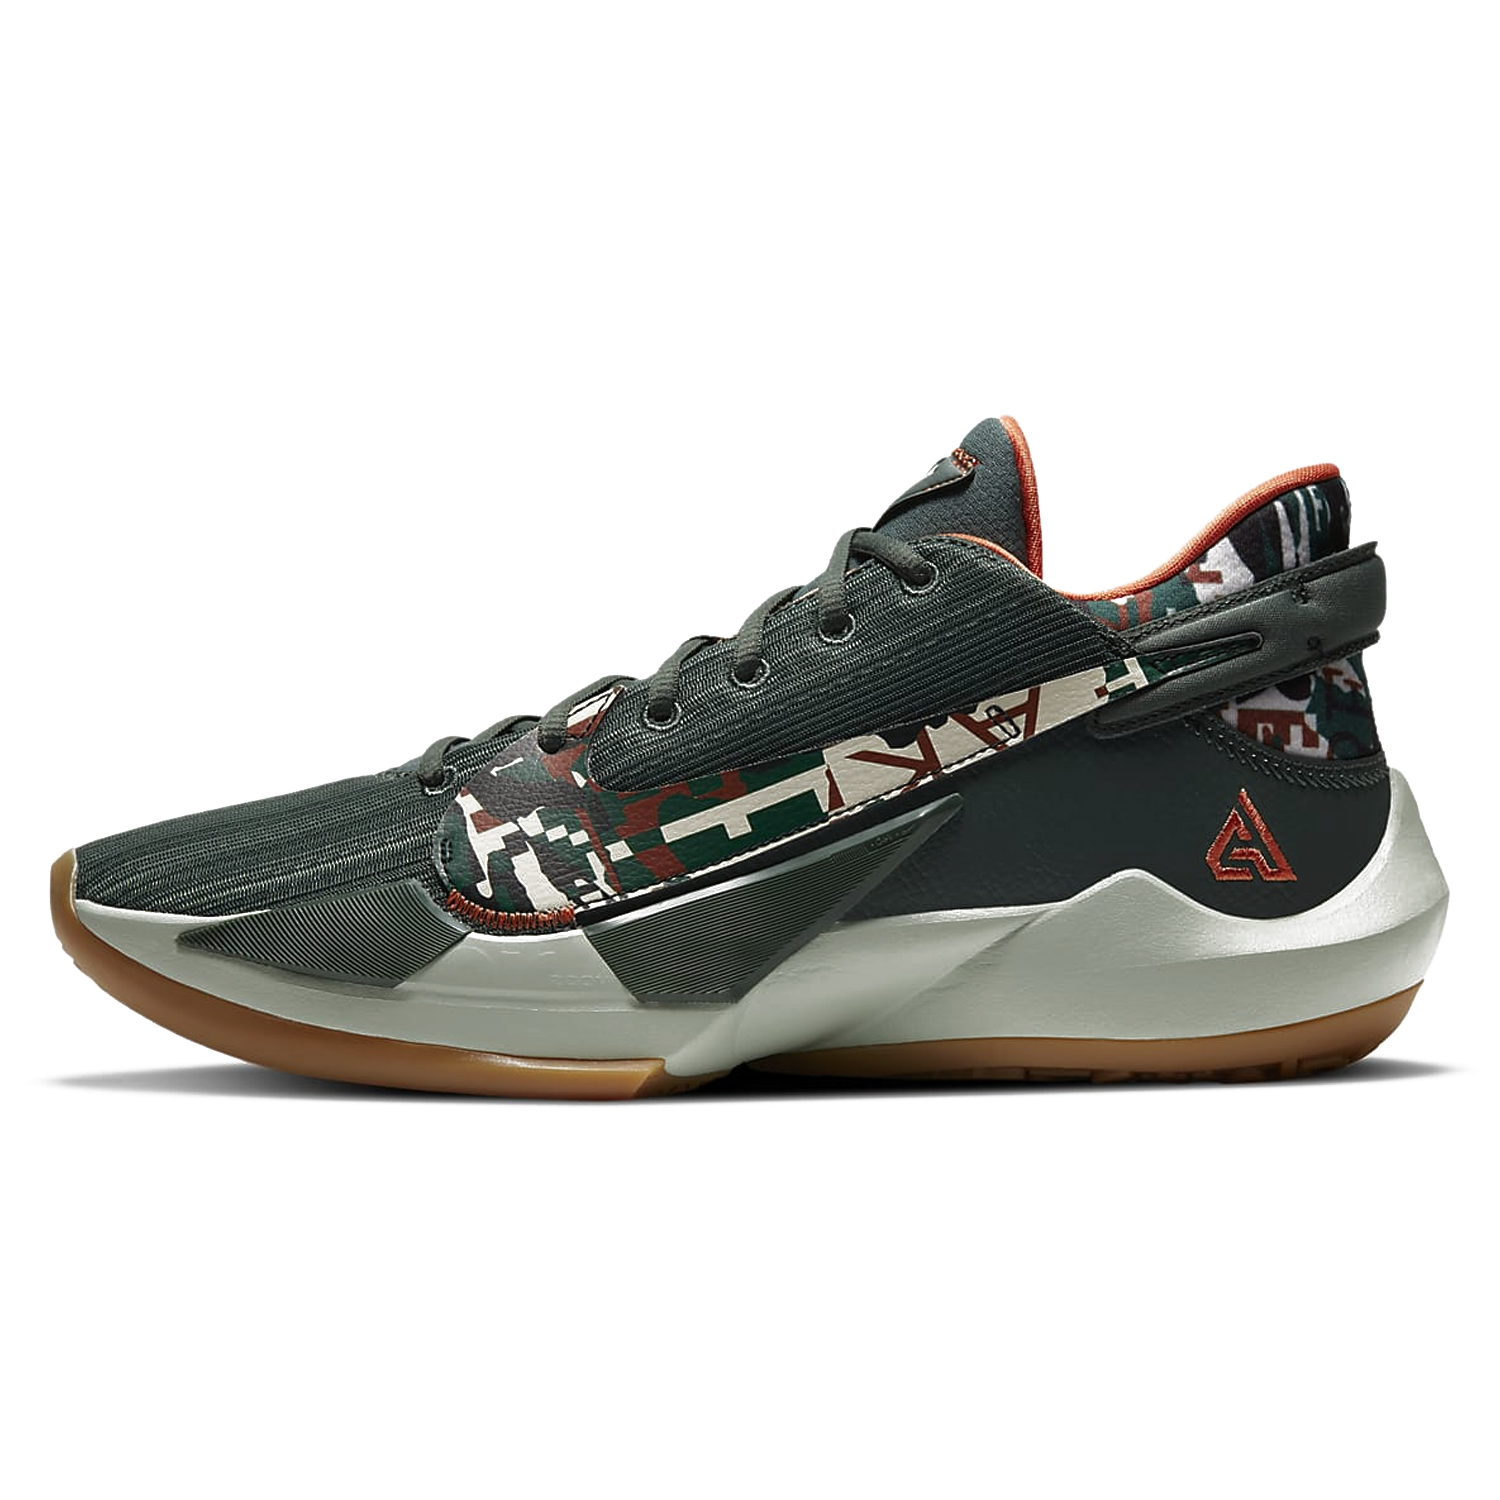 Nike Zoom Freak 2 "Ashiko" Basketball Shoes DC9853-300 VINTAGE GREEN/PISTACHIO FROST-CAMELLIA